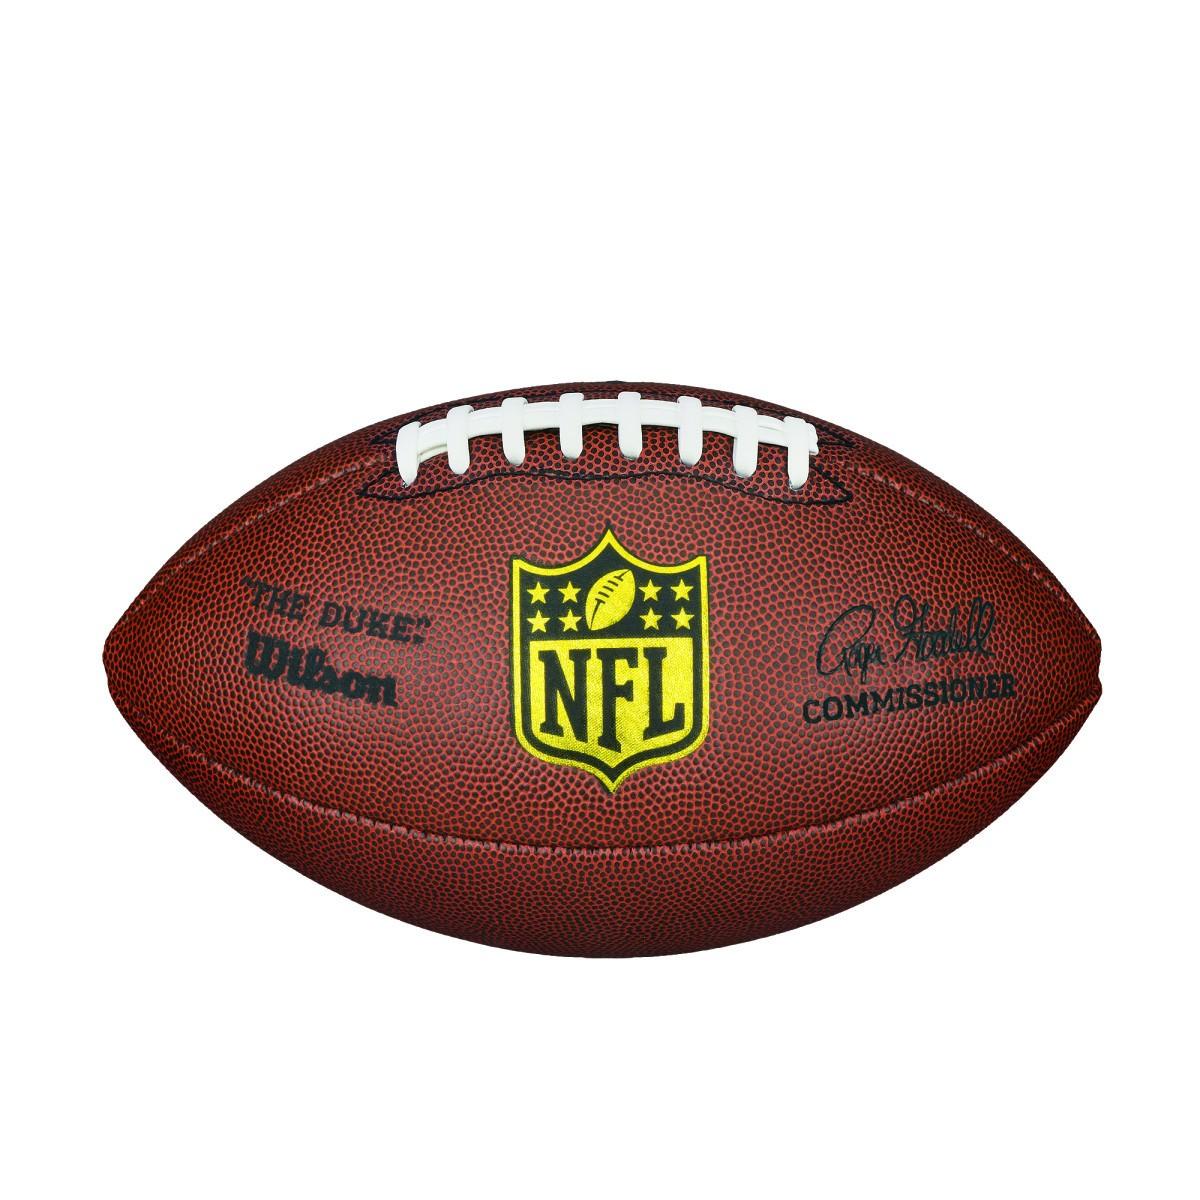 NFL Duke Replica Composite Football - Official